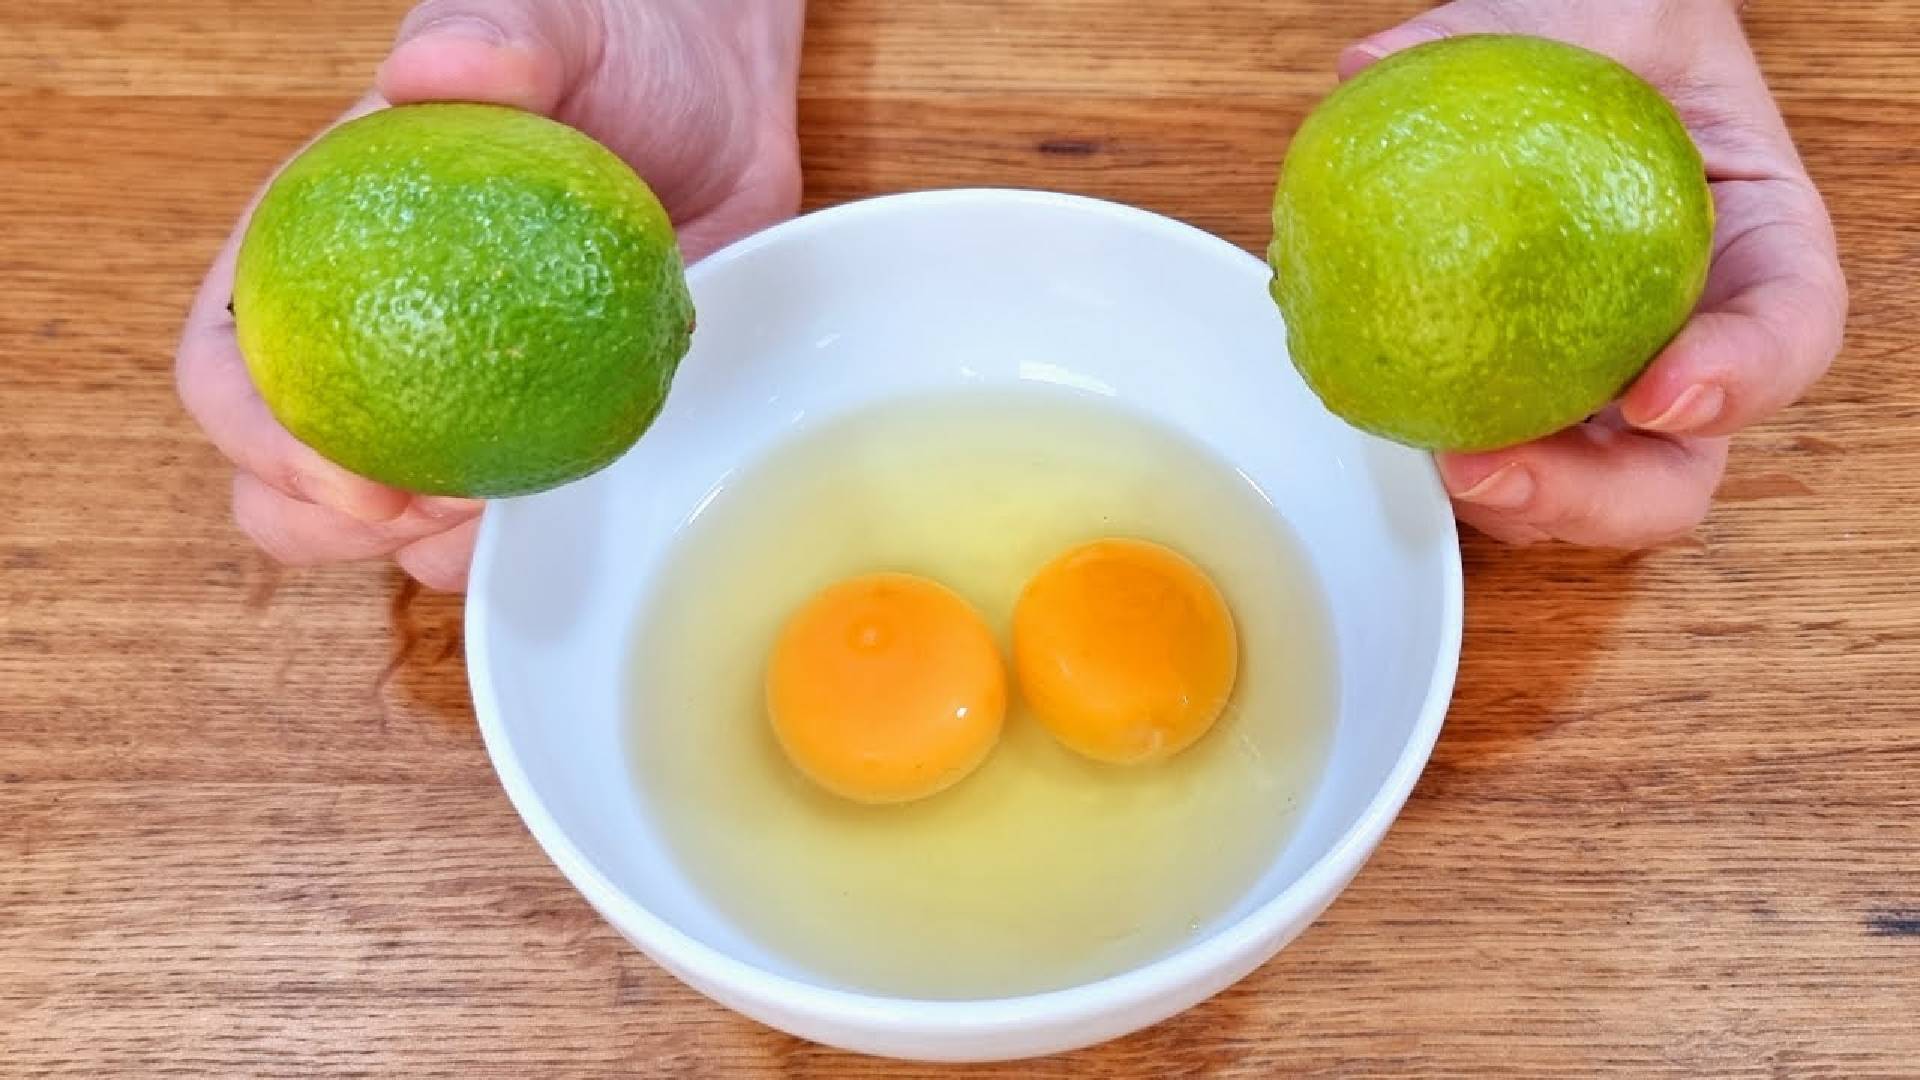 Técnica para fritar ovos adicionando limão